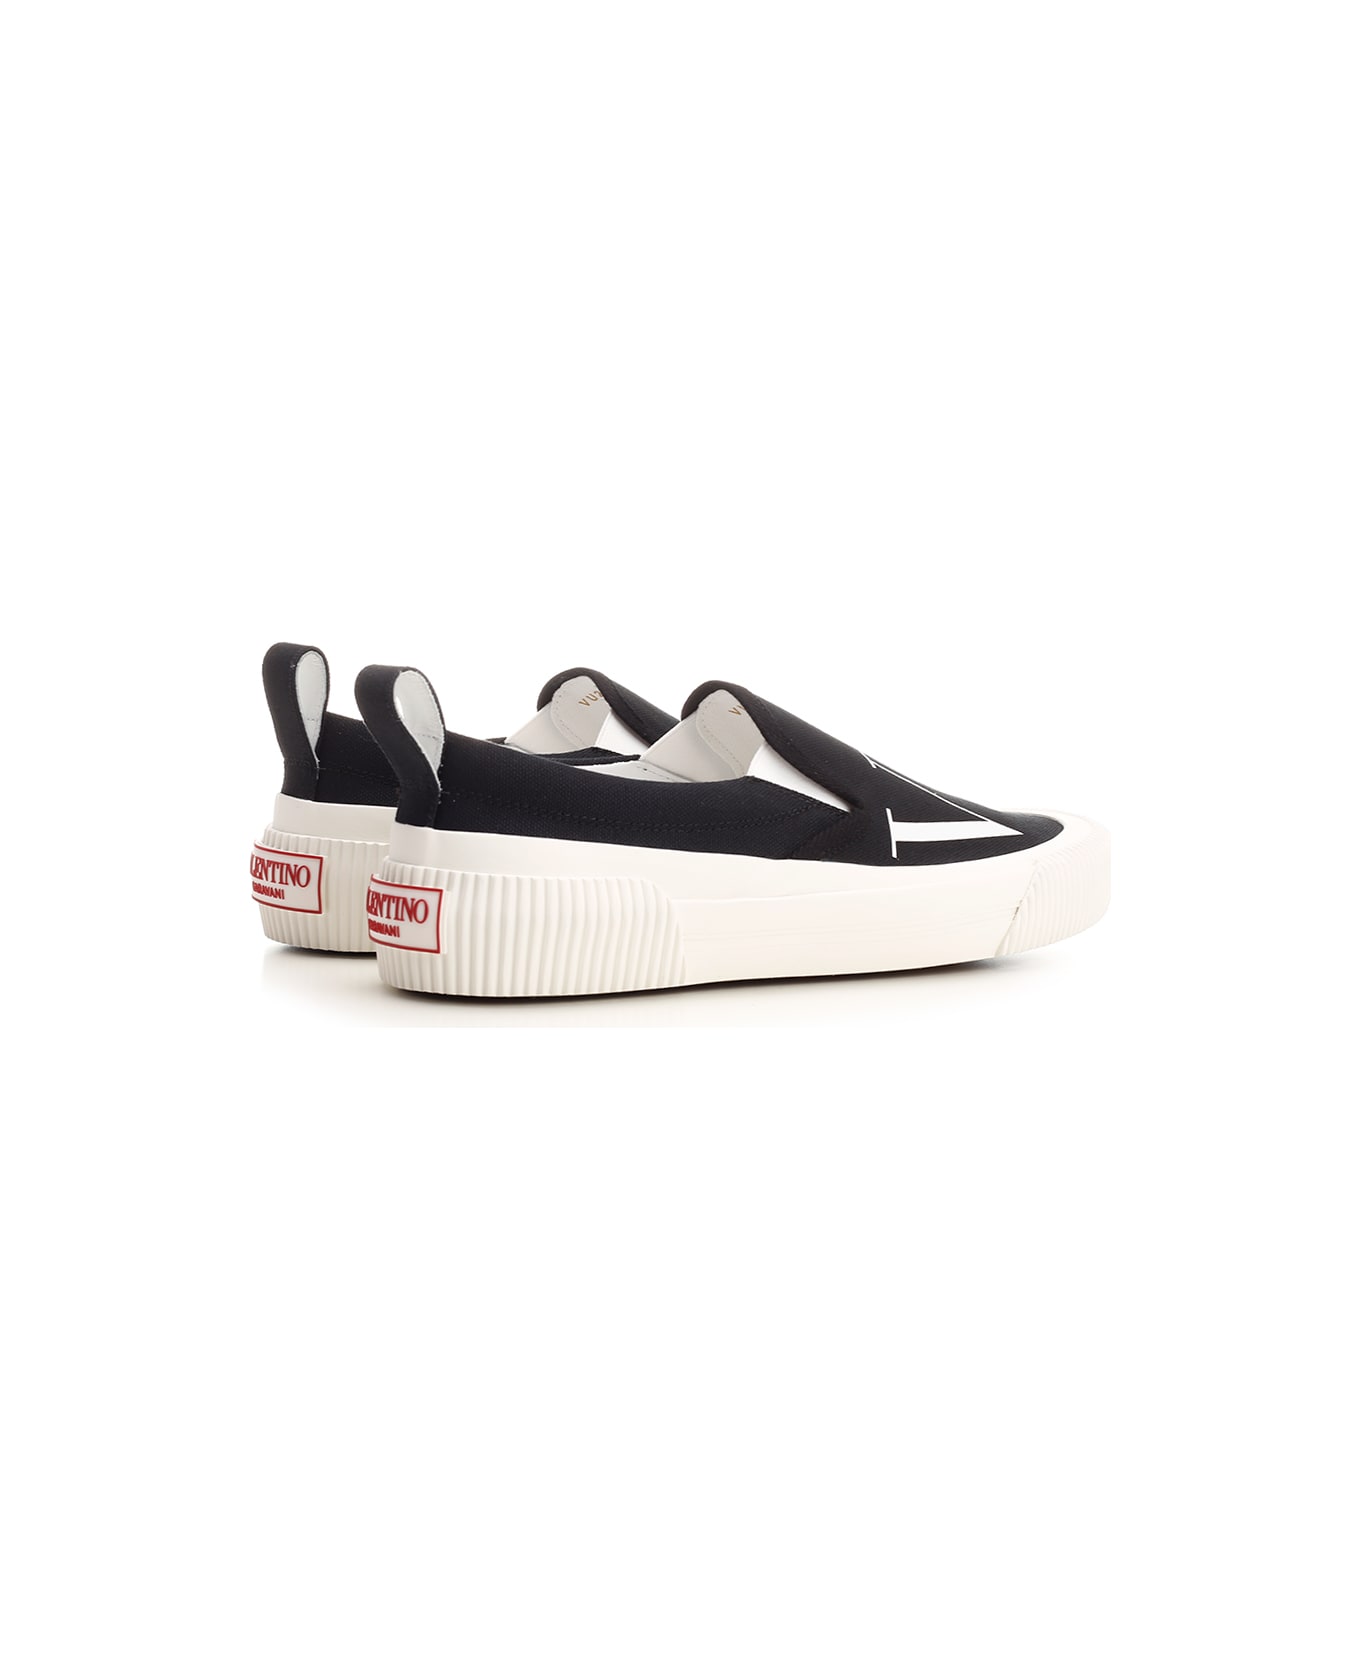 Valentino Garavani 'vltn' Slip-on Sneaker - Black